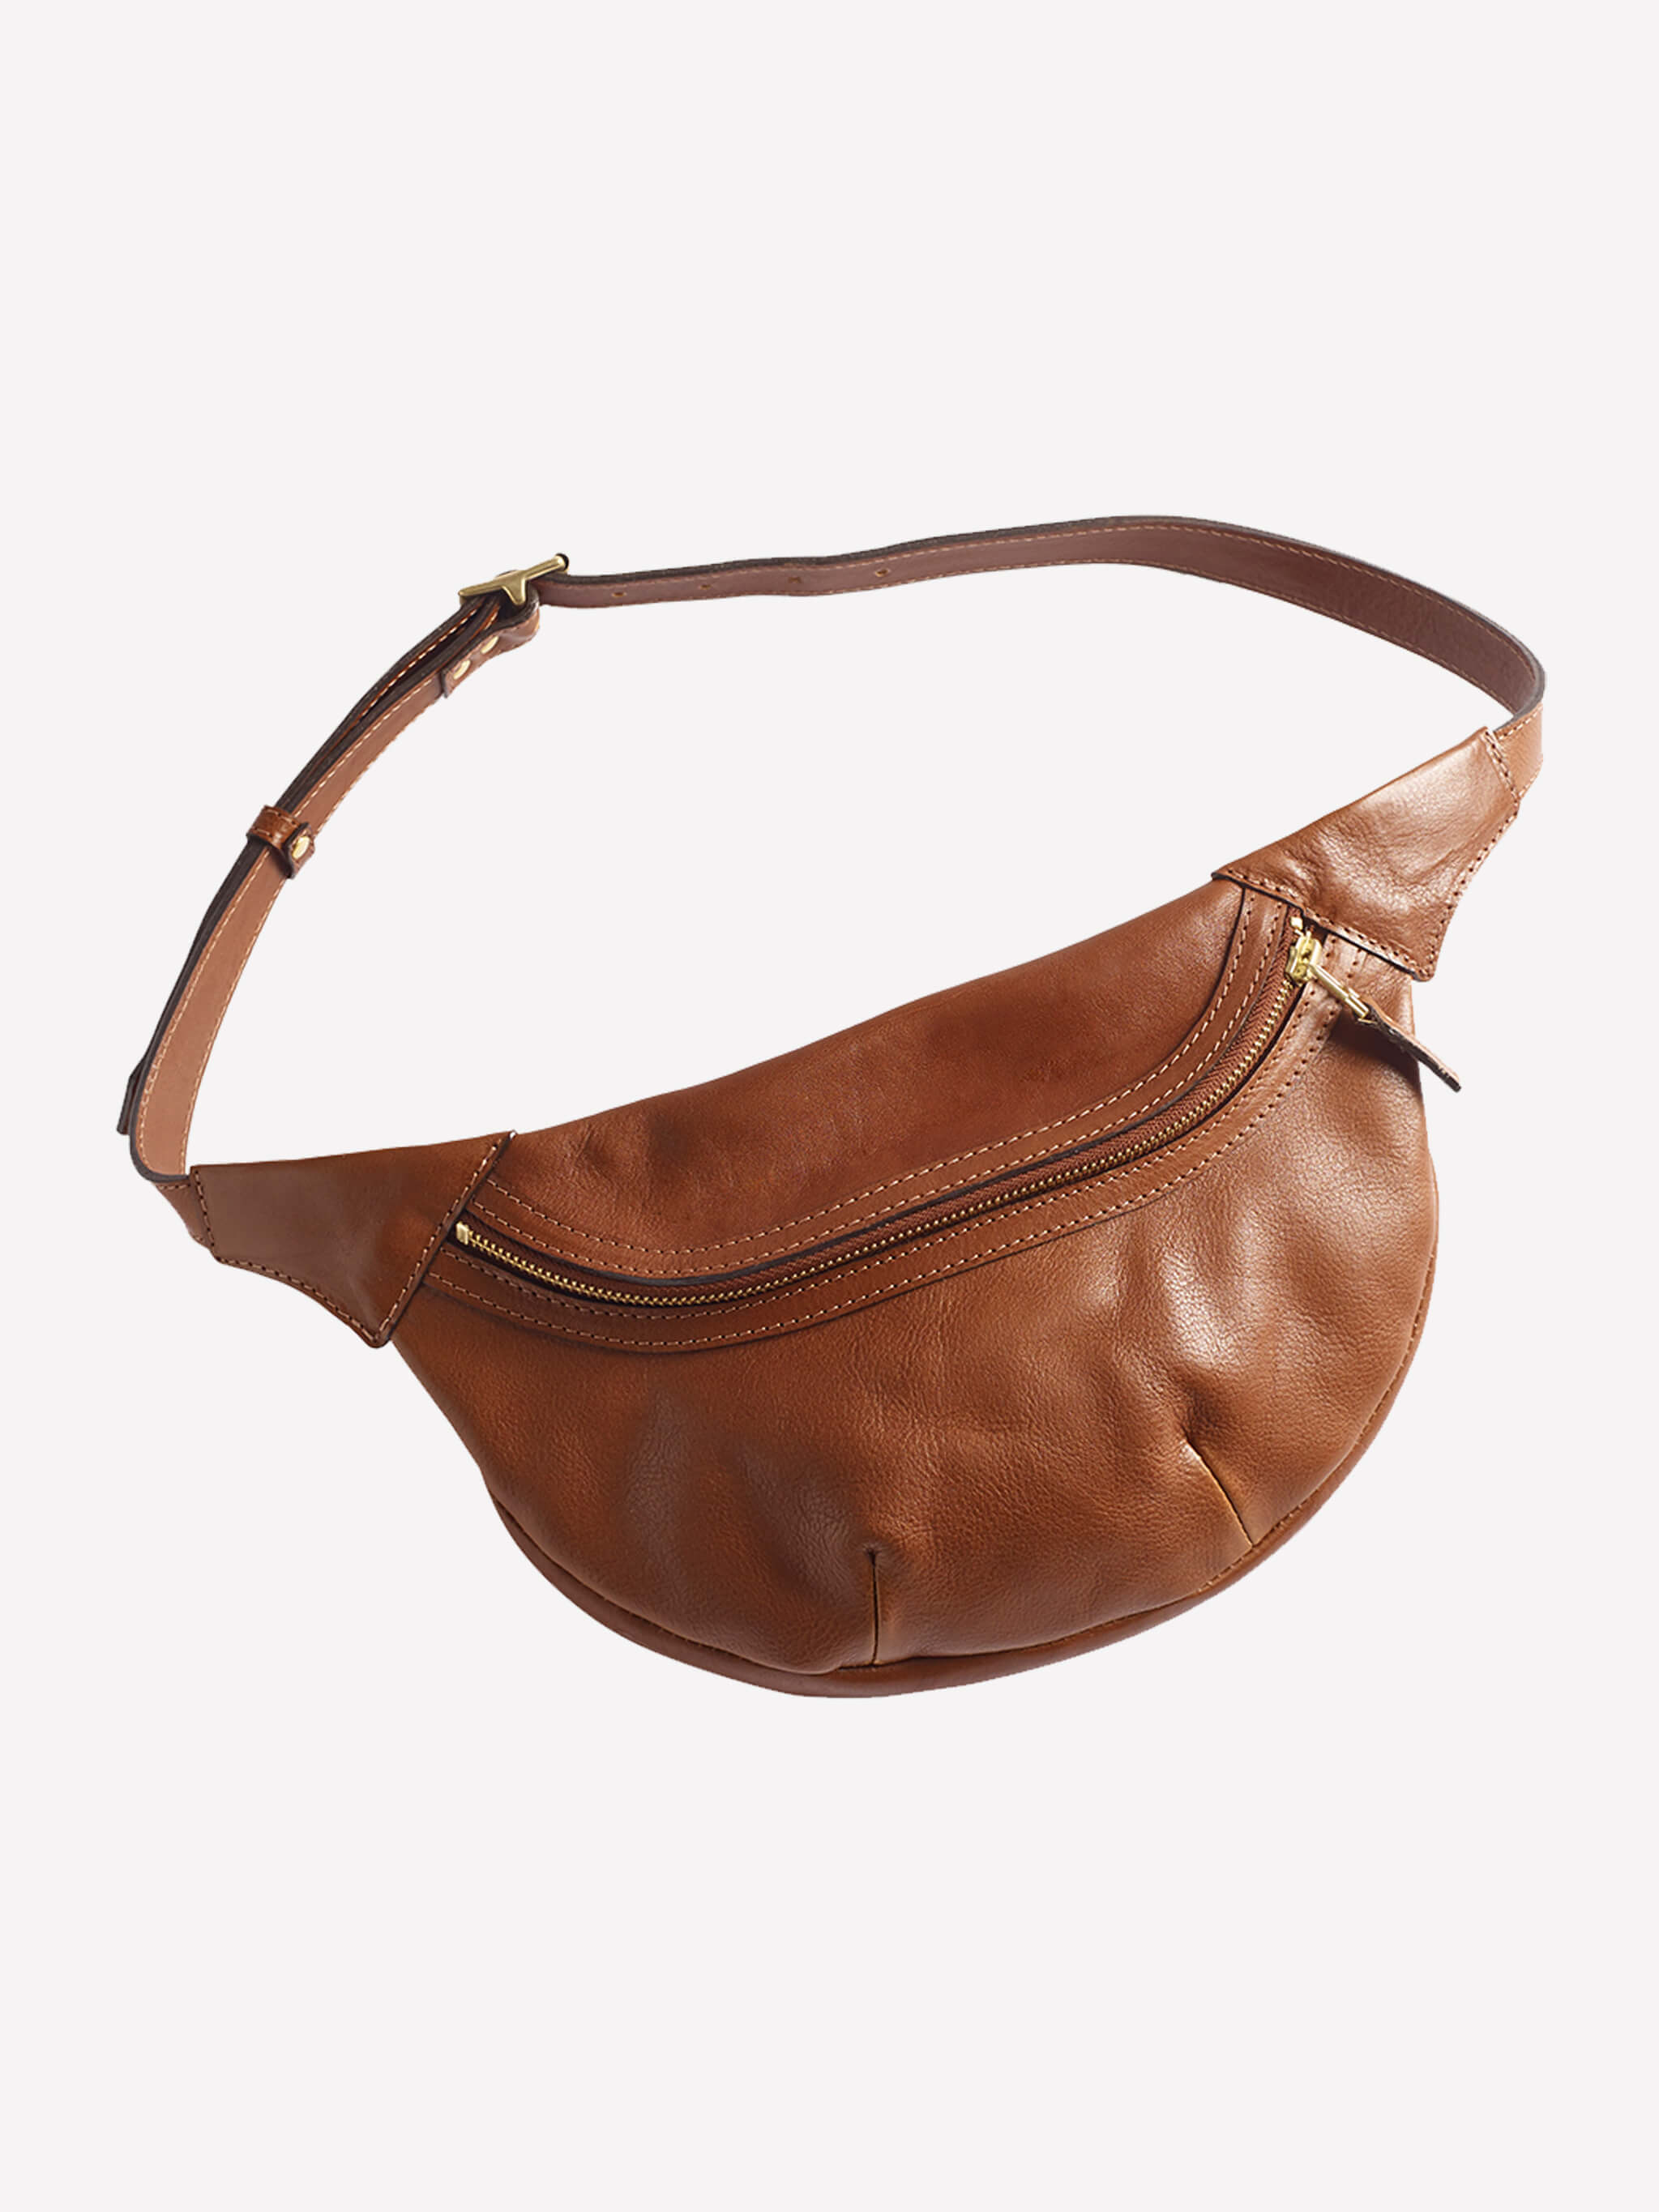 Loe Leather Bum Bag - Tan